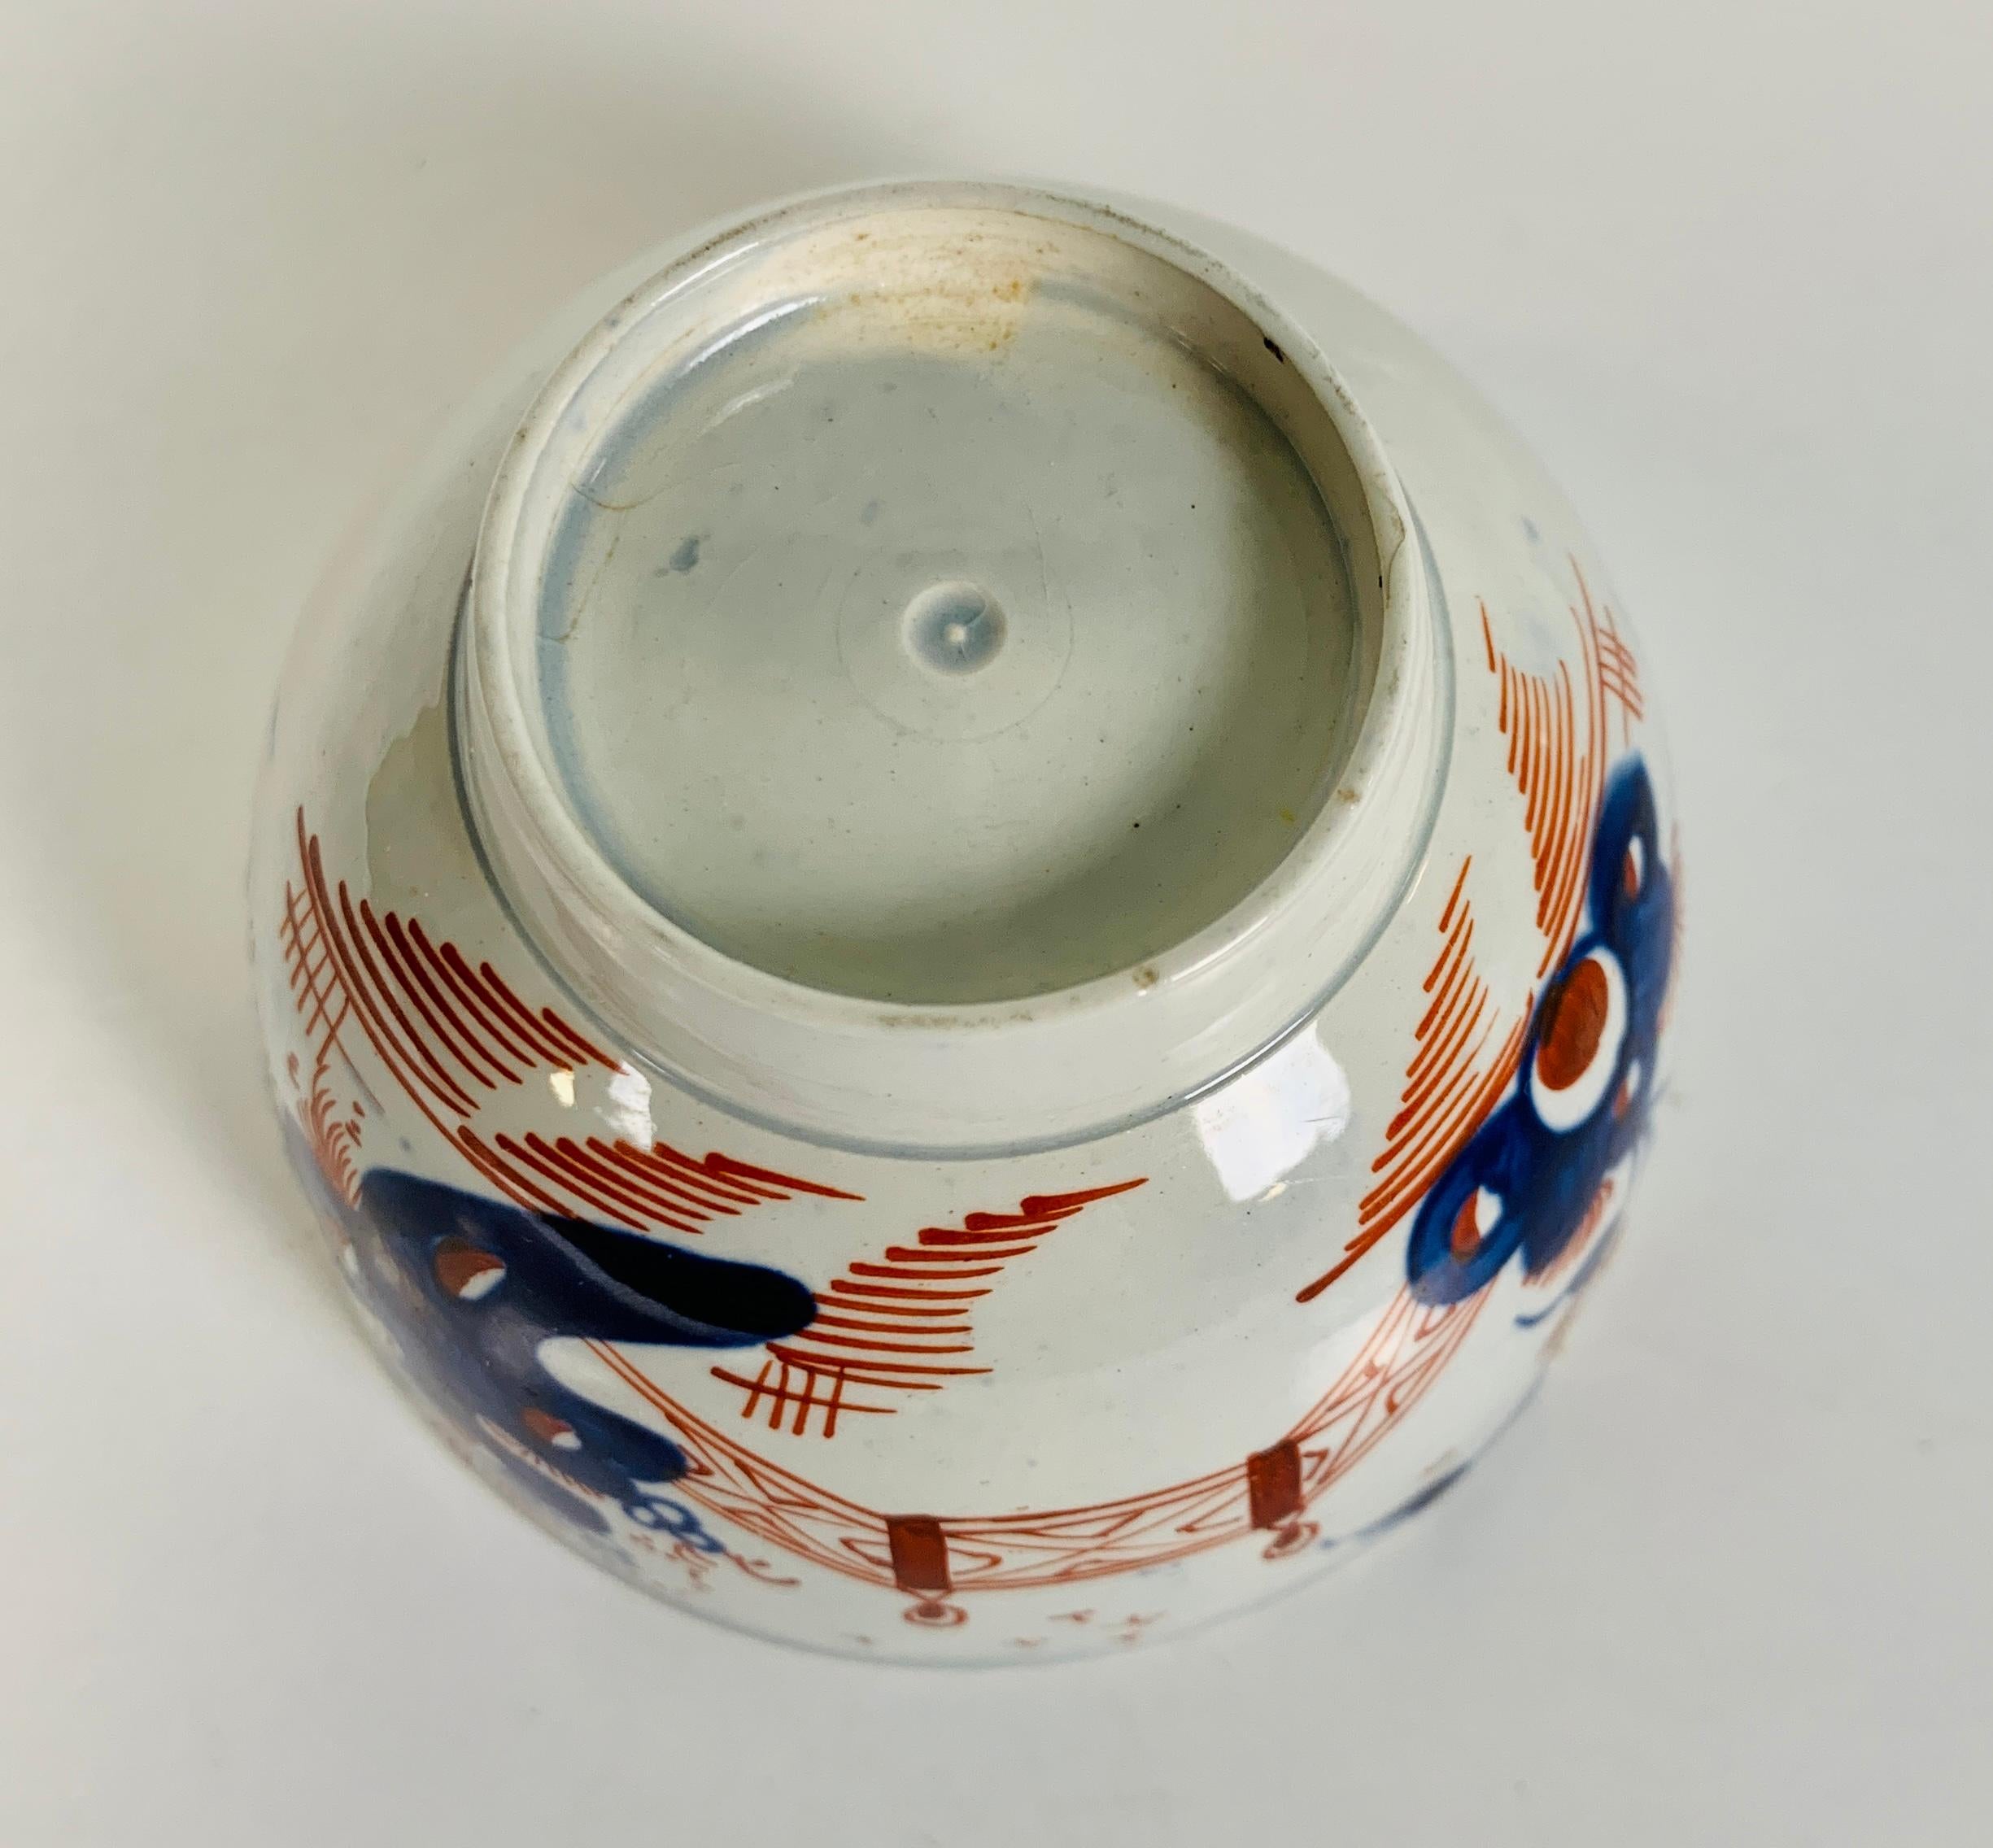 Pair Tea Bowls & Saucers Pearled Creamware Hand-Painted in Imari Colors 18th C 4